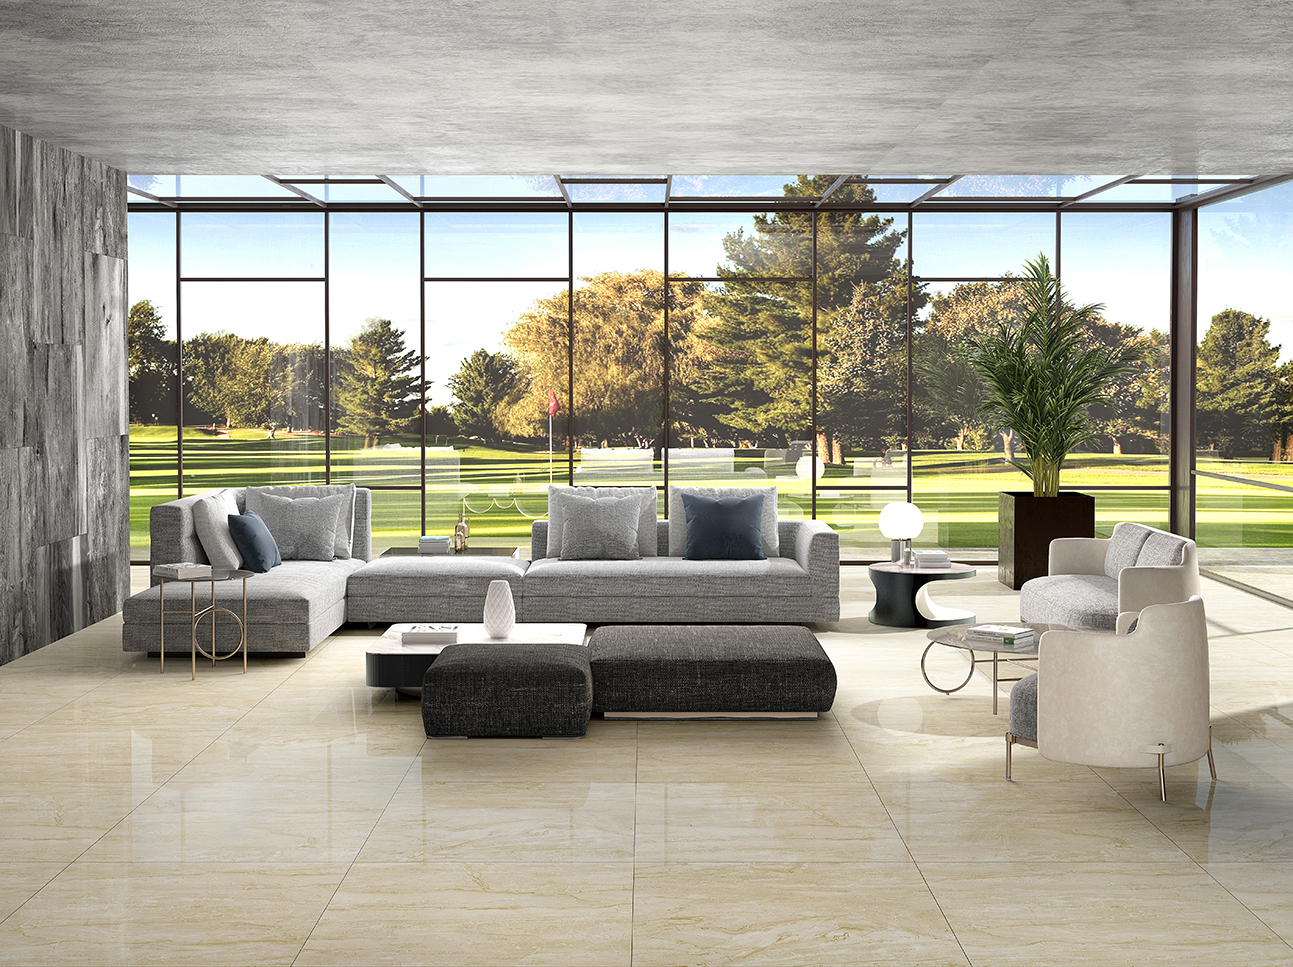 大理石瓷砖安塔娜米黄IPGS90071客厅空间效果图